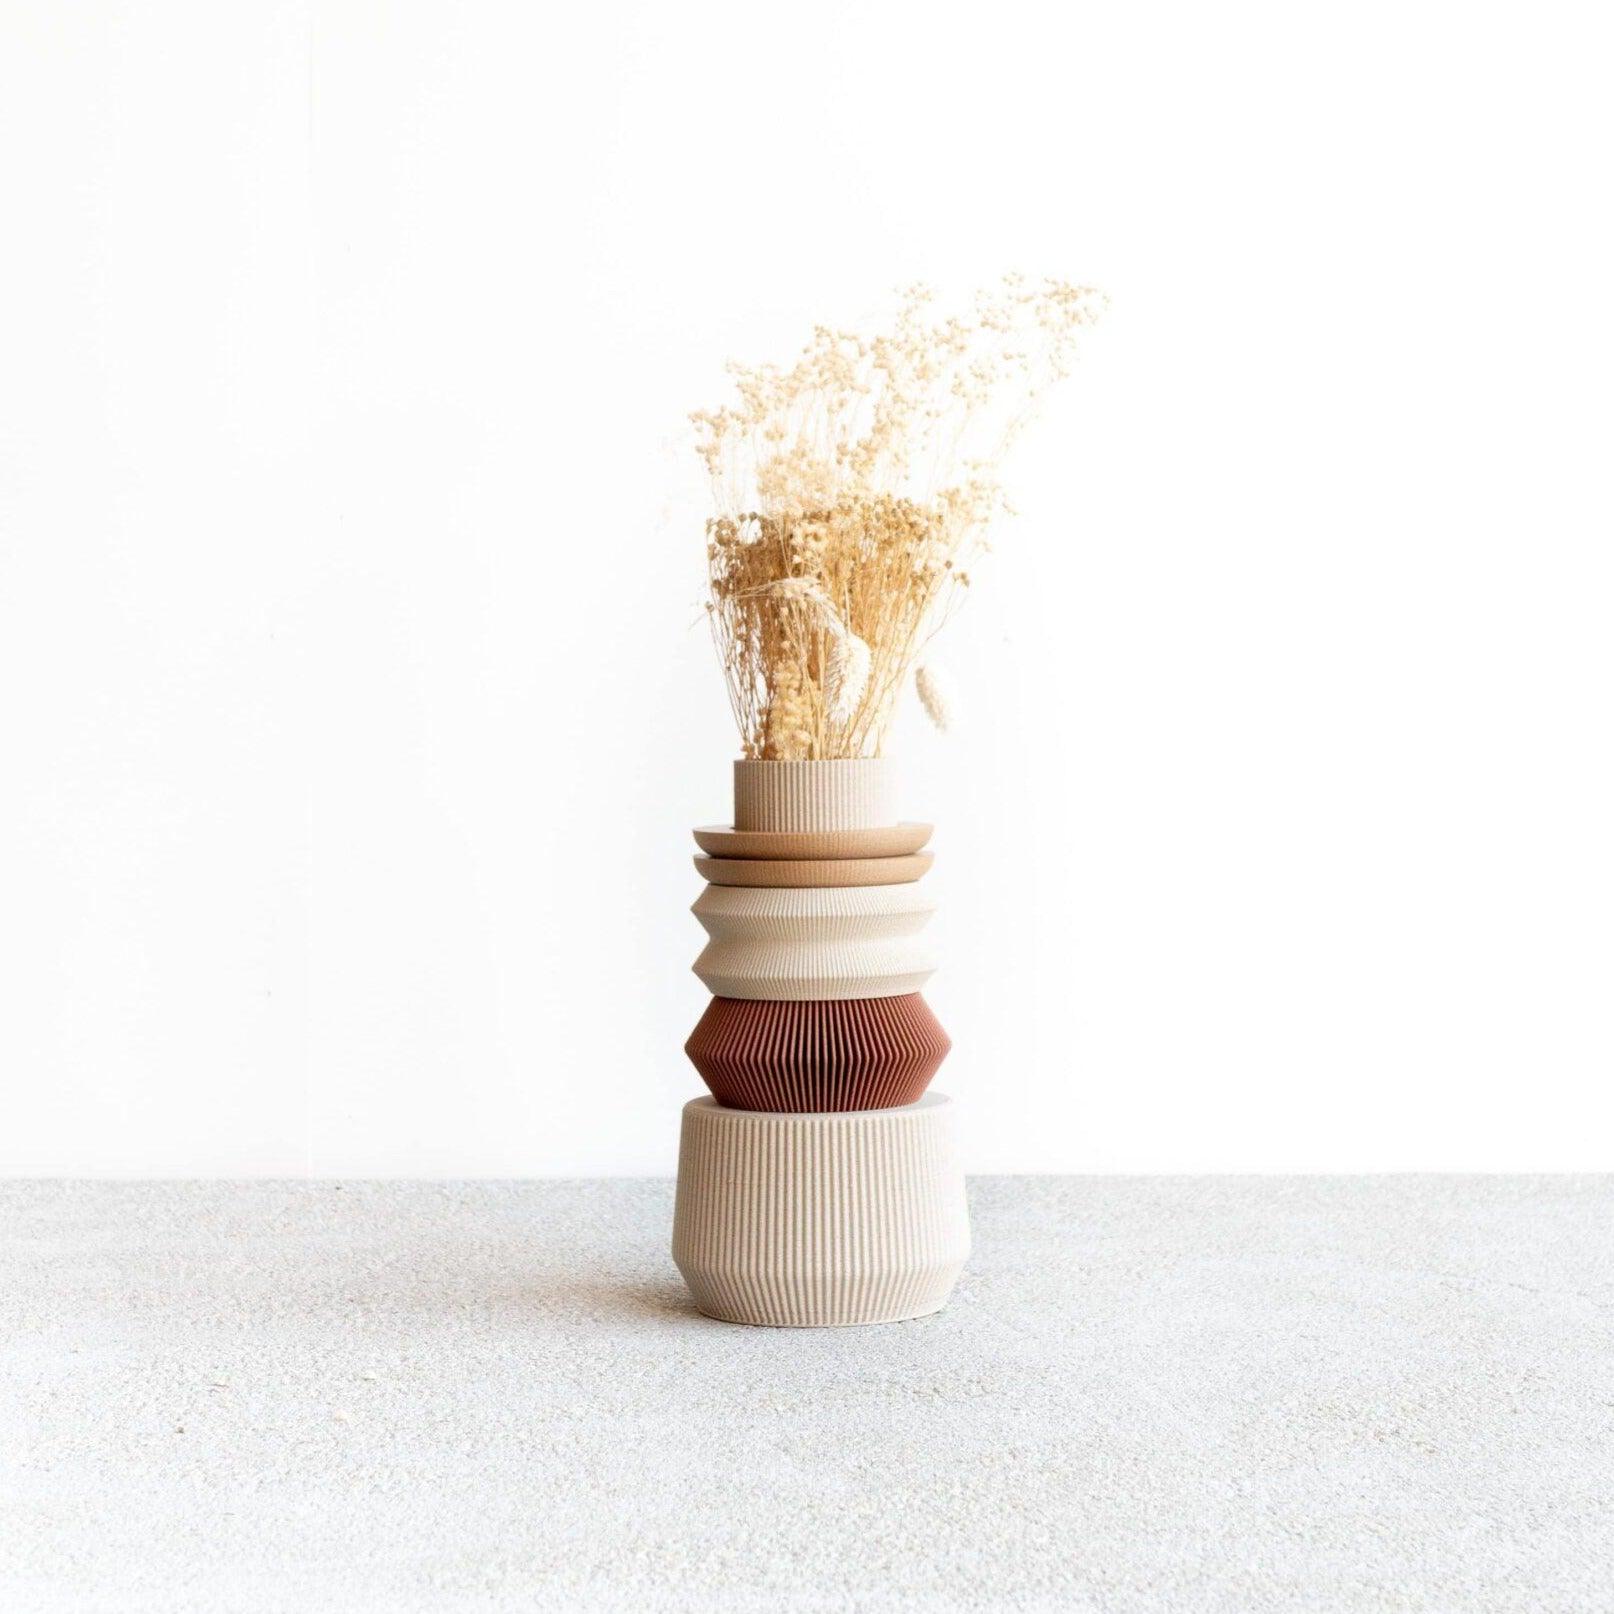 AUSTIN Modular Vase - Minimum Design 